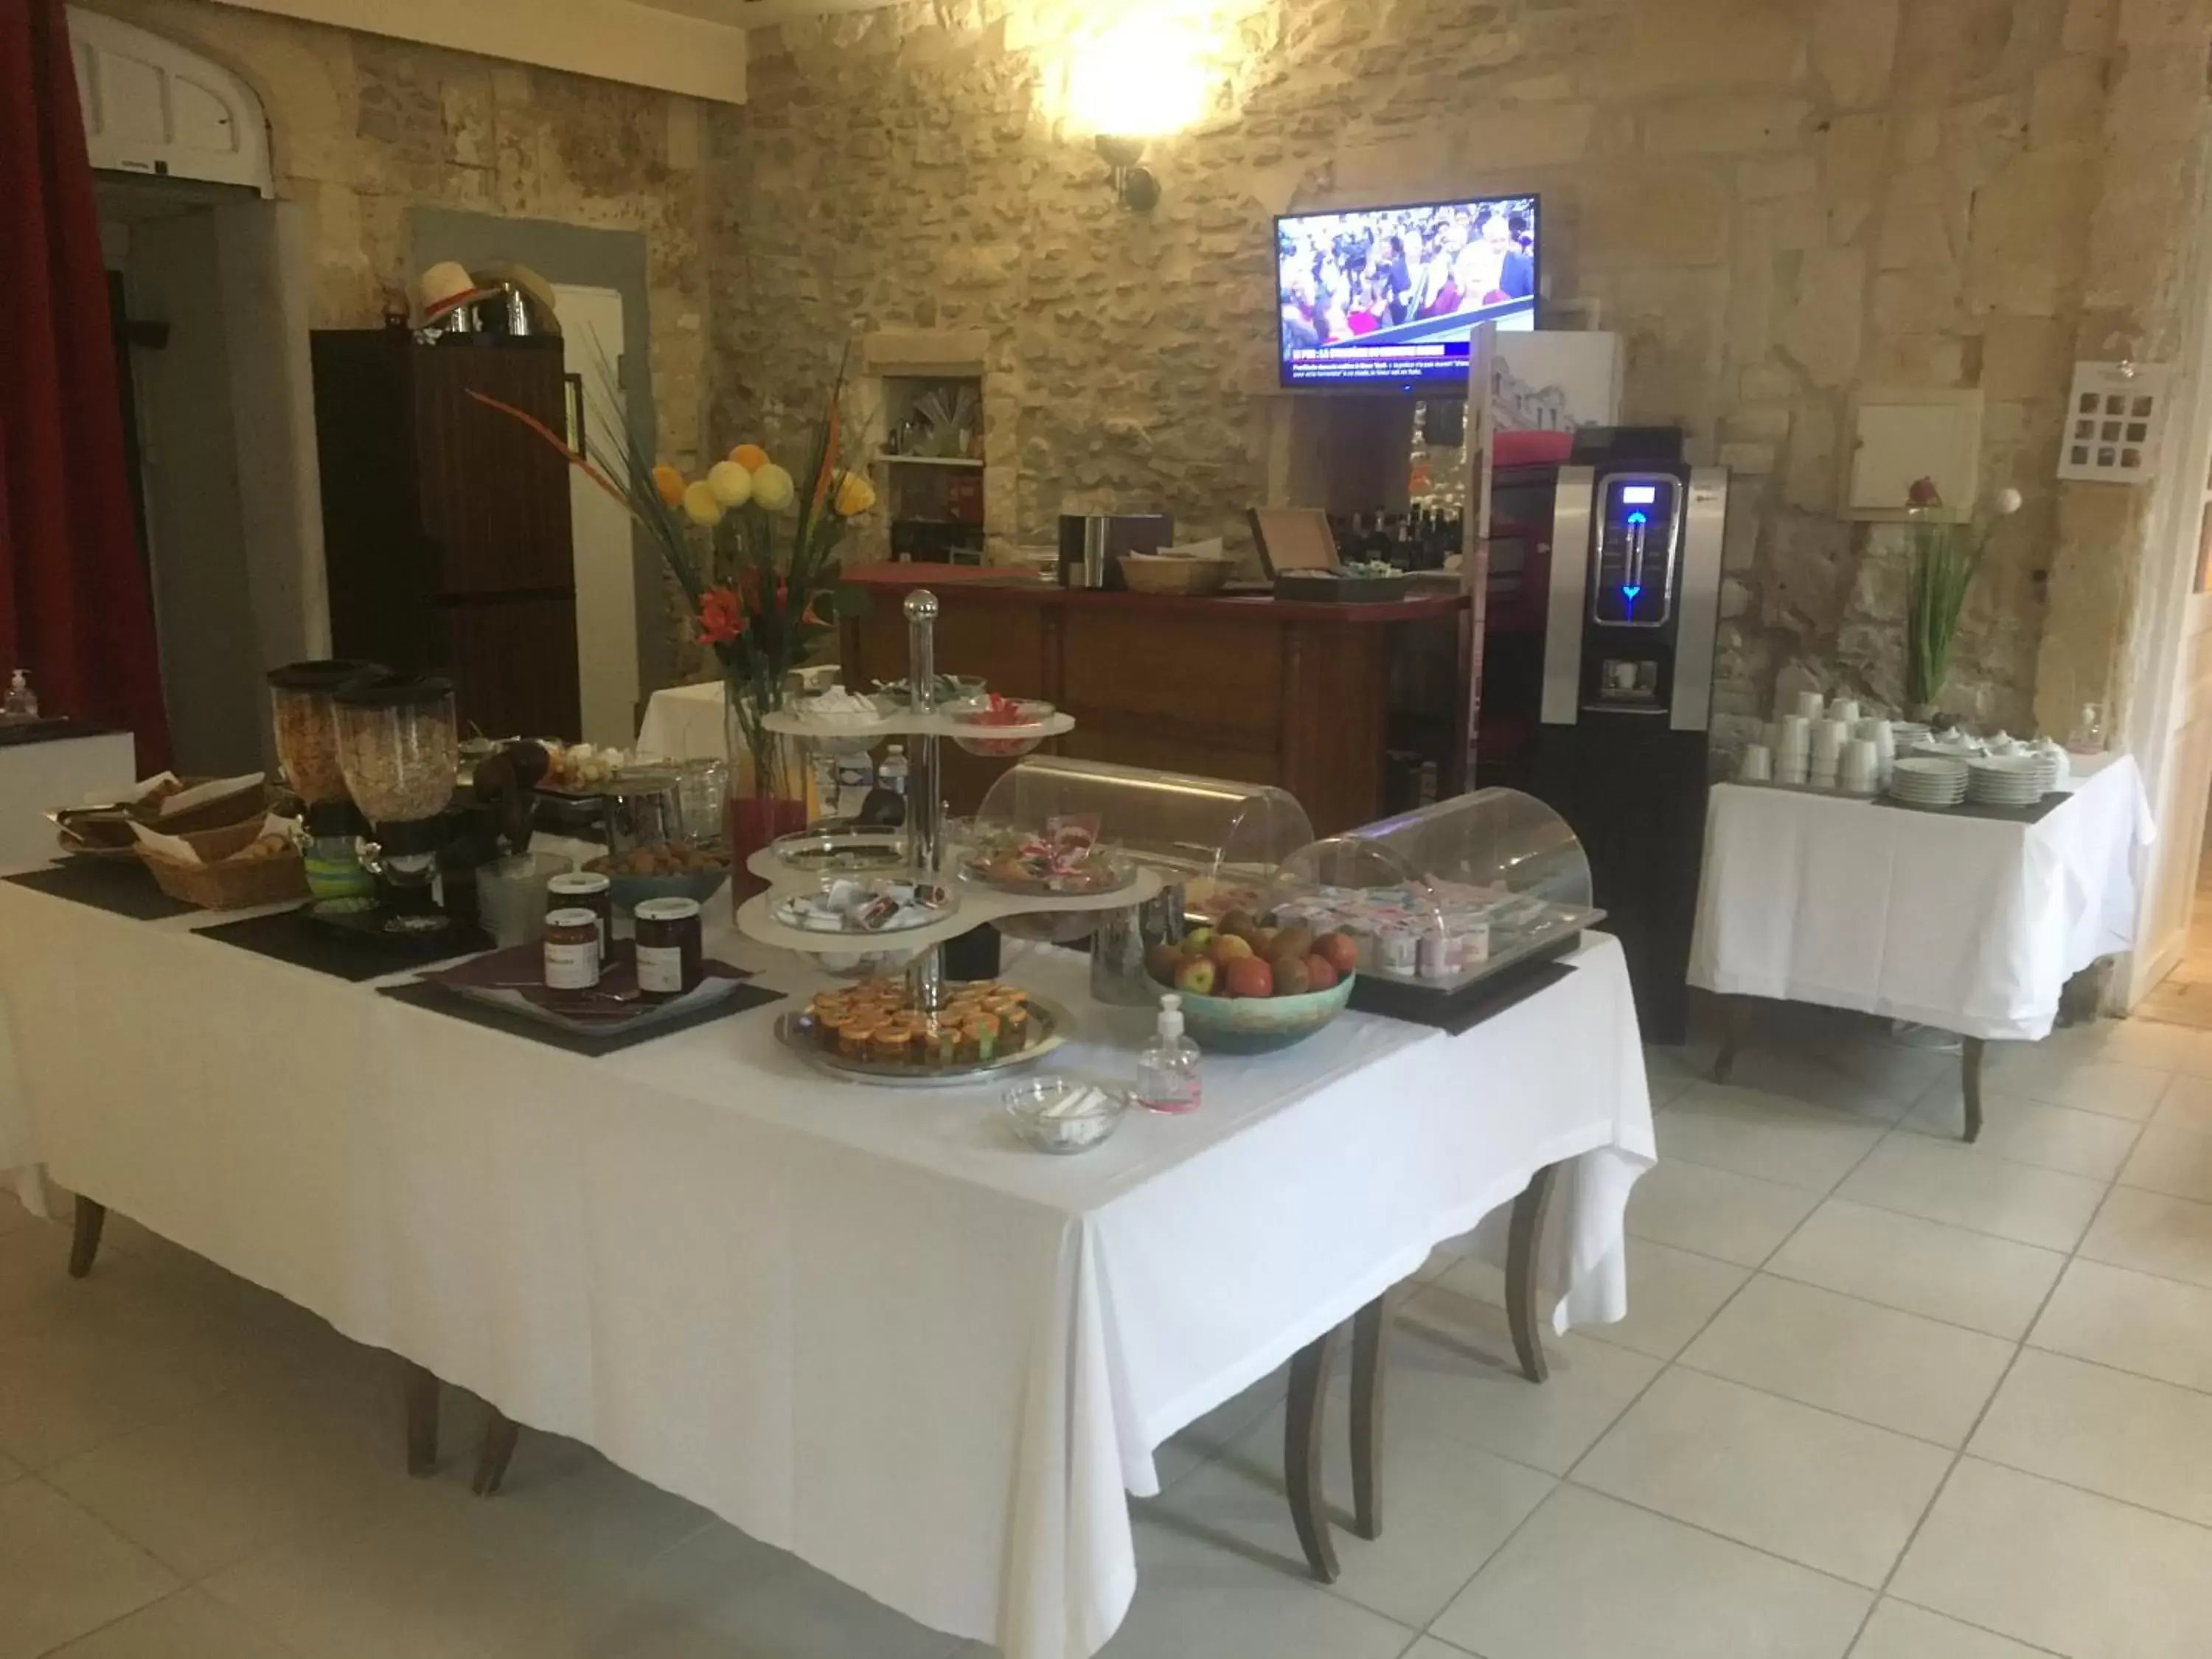 Buffet breakfast in Hostellerie De La Source